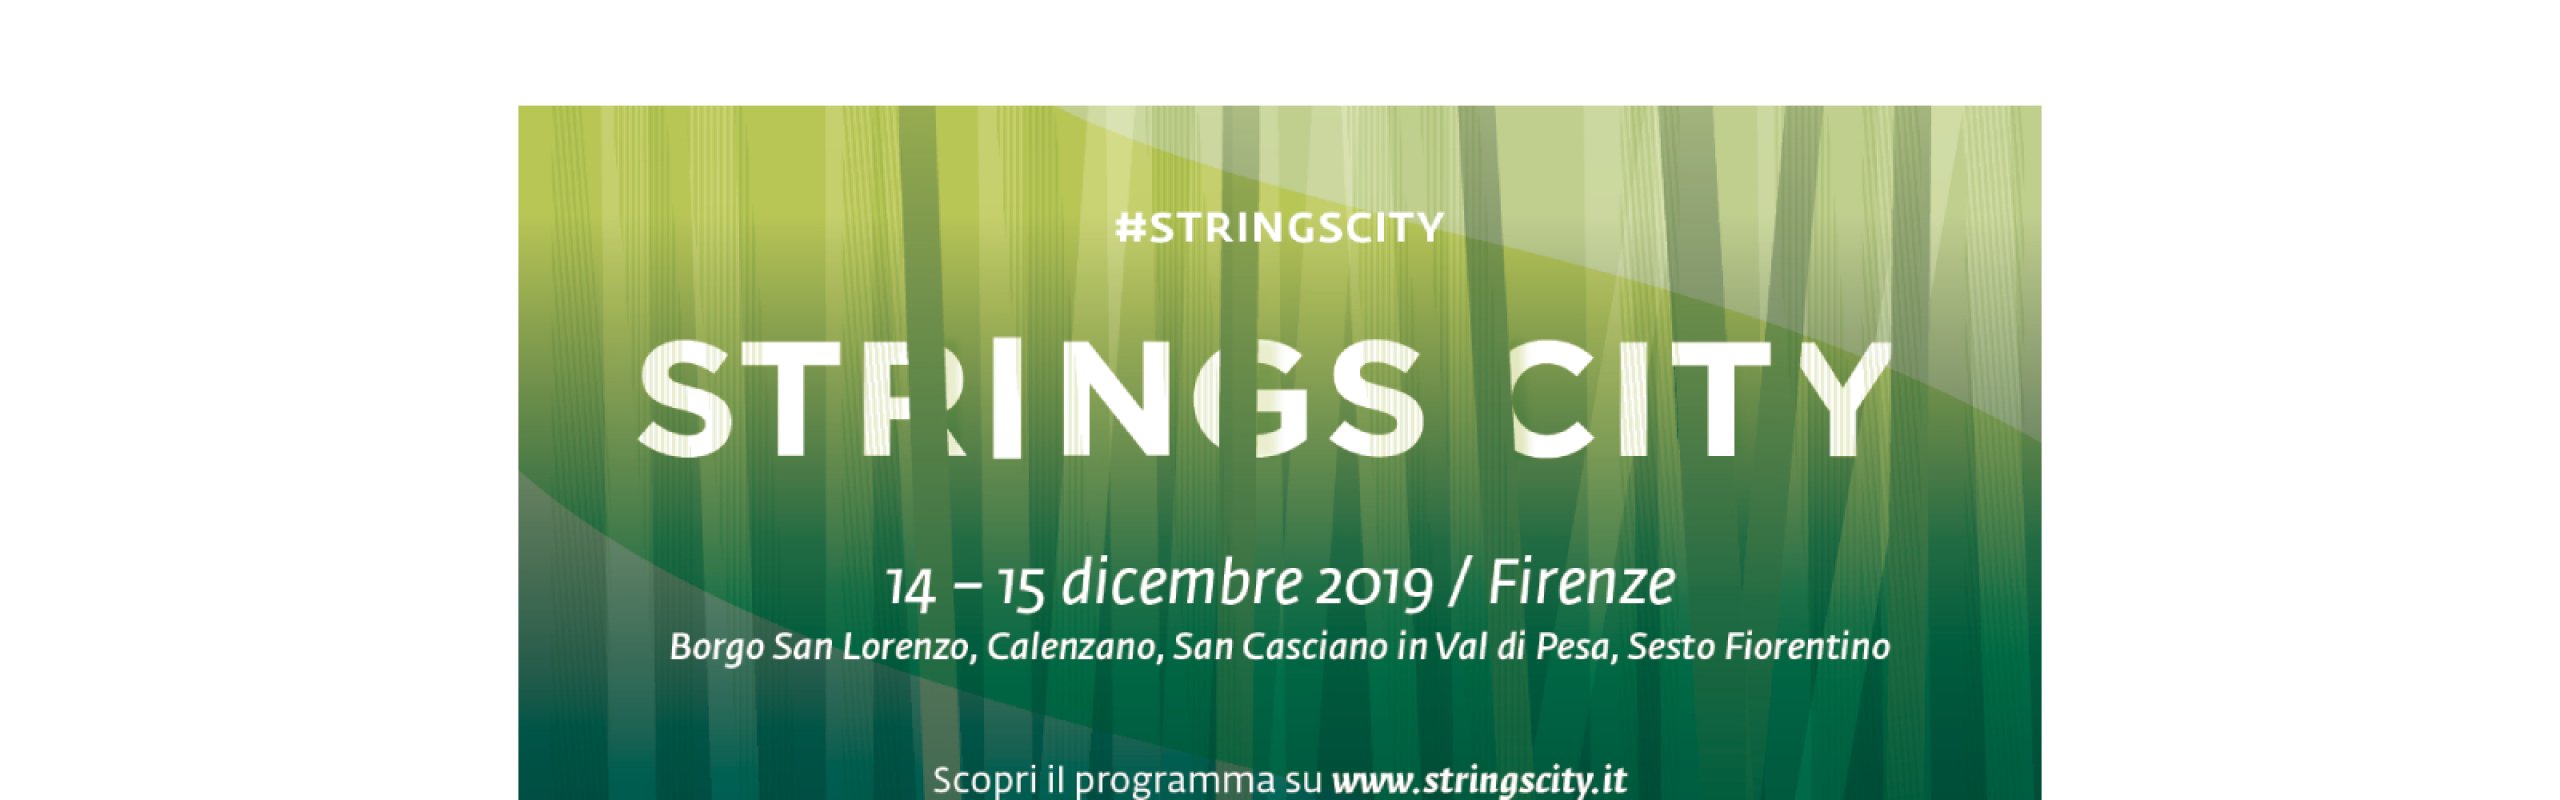 String City 2019